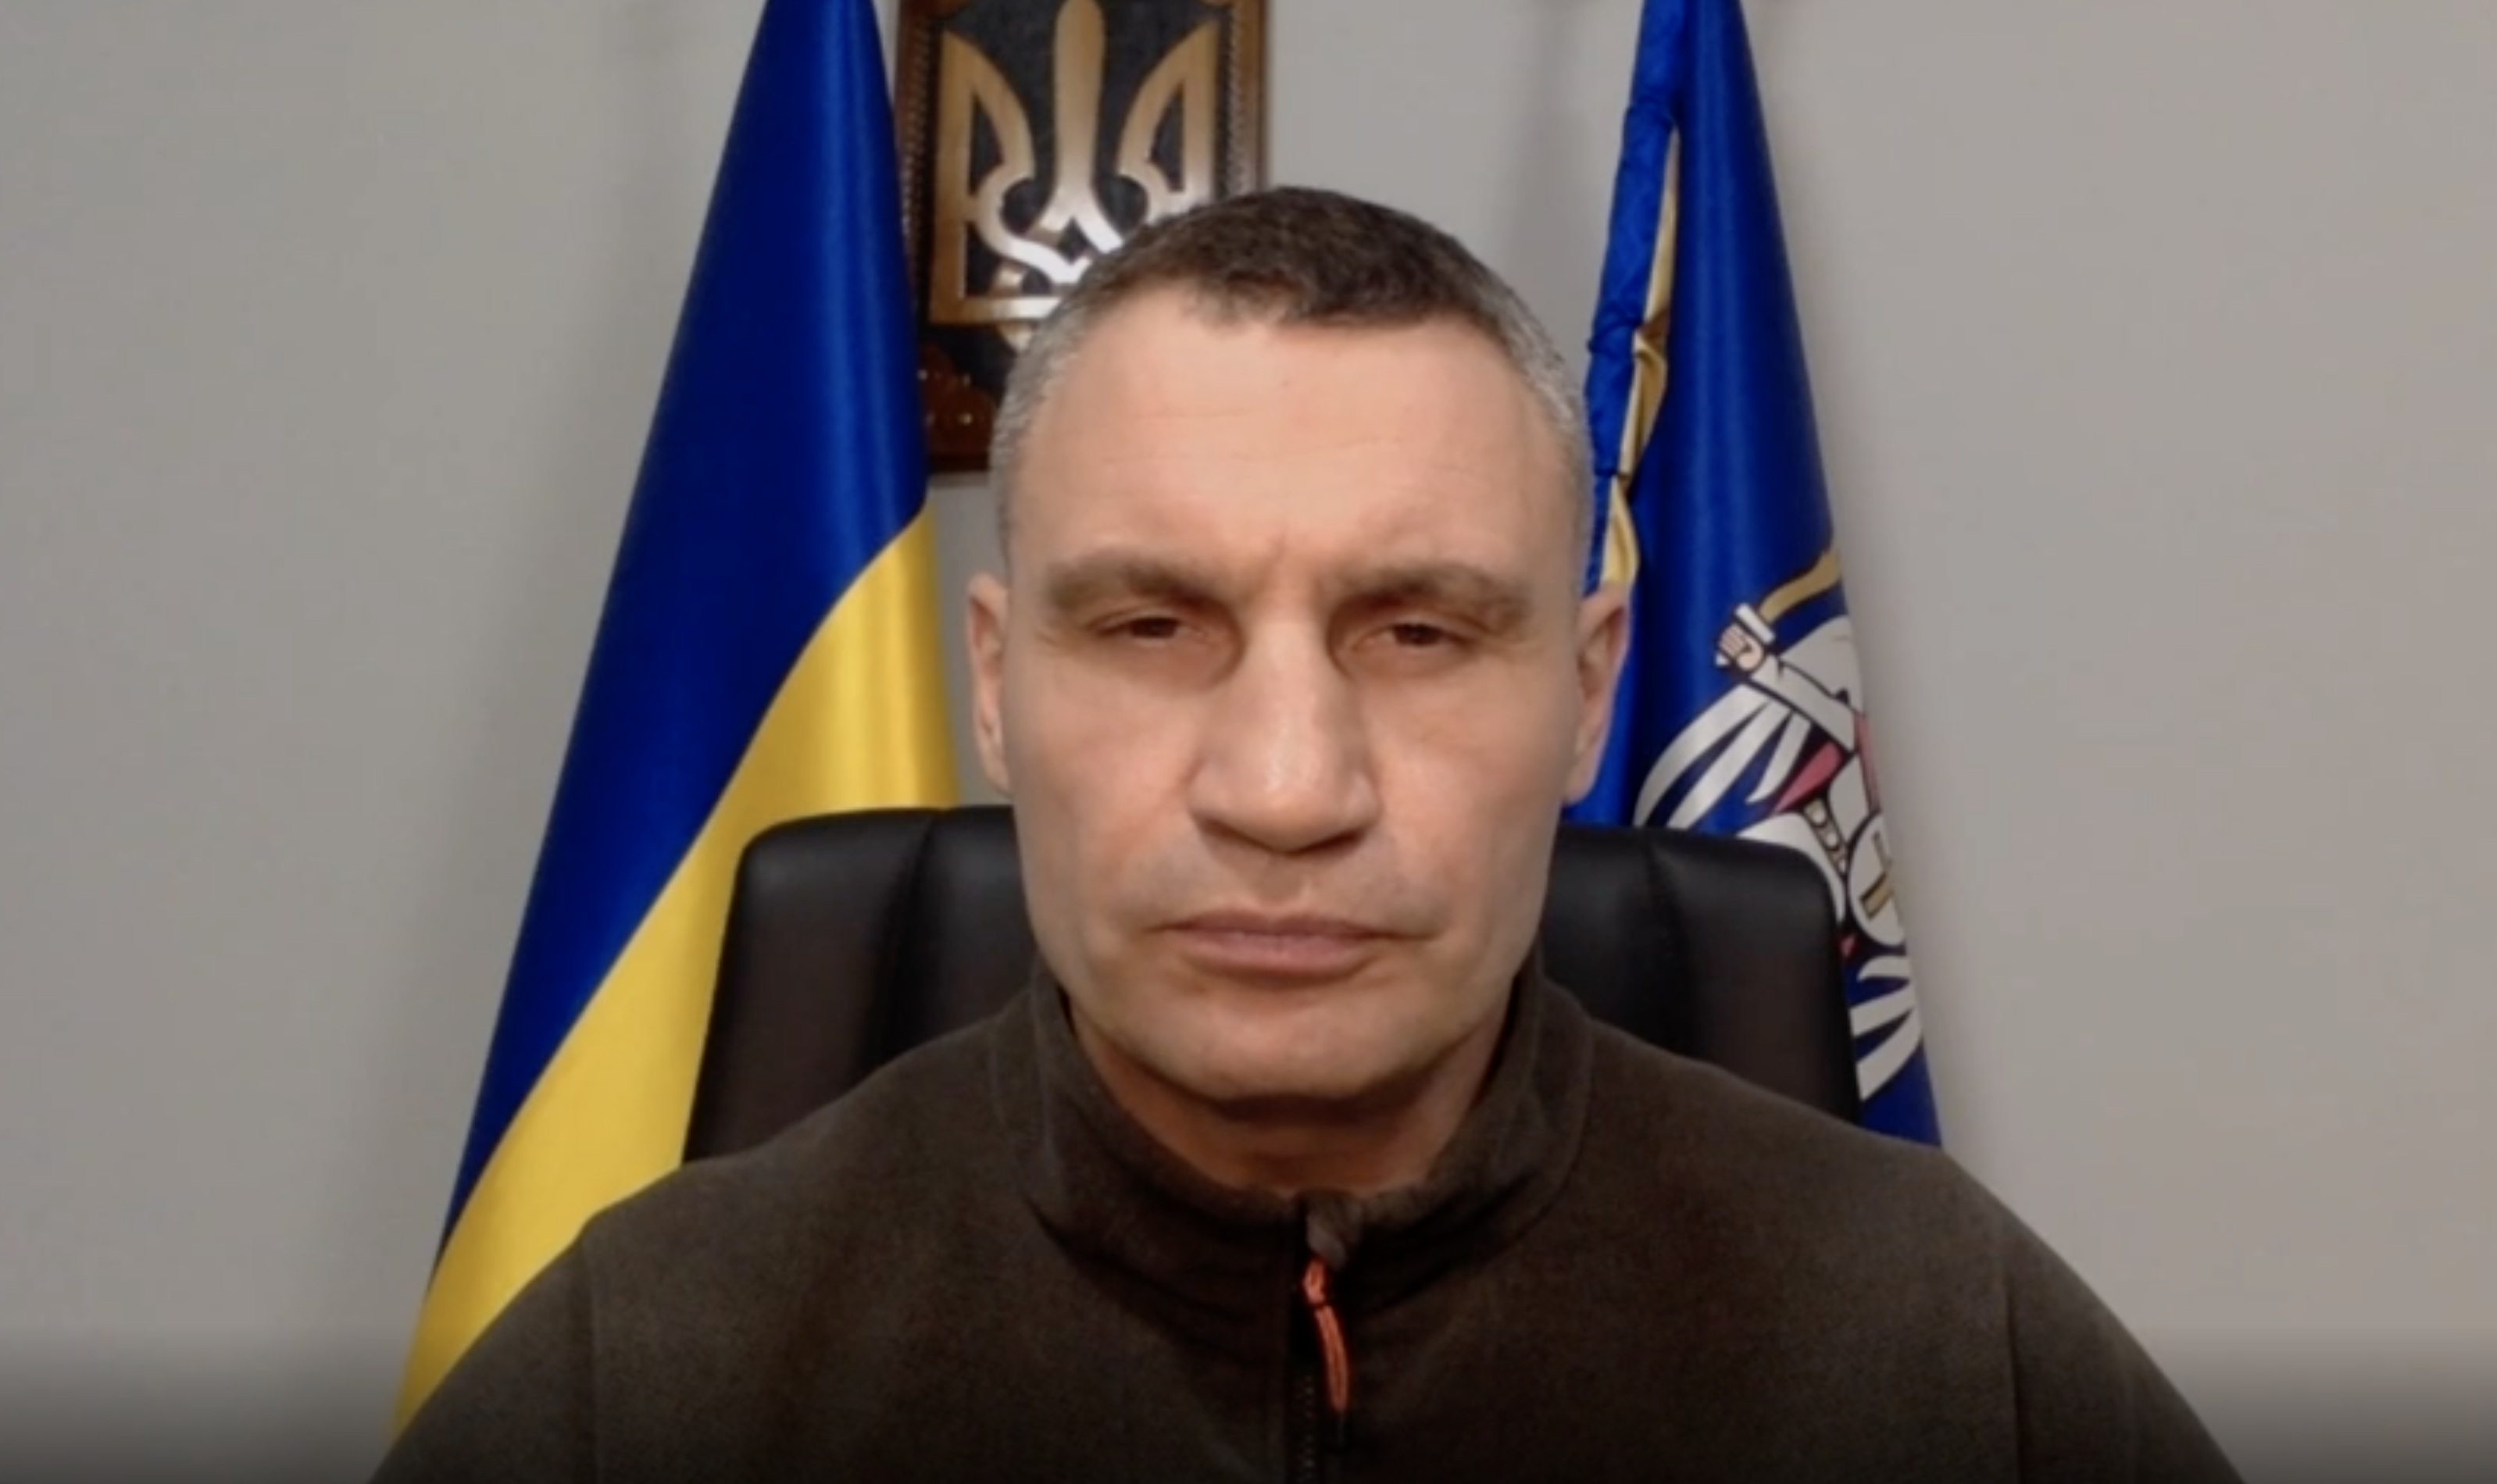 Kyiv Mayor Vitali Klitschko speaking on CNN's New Day on March 9.